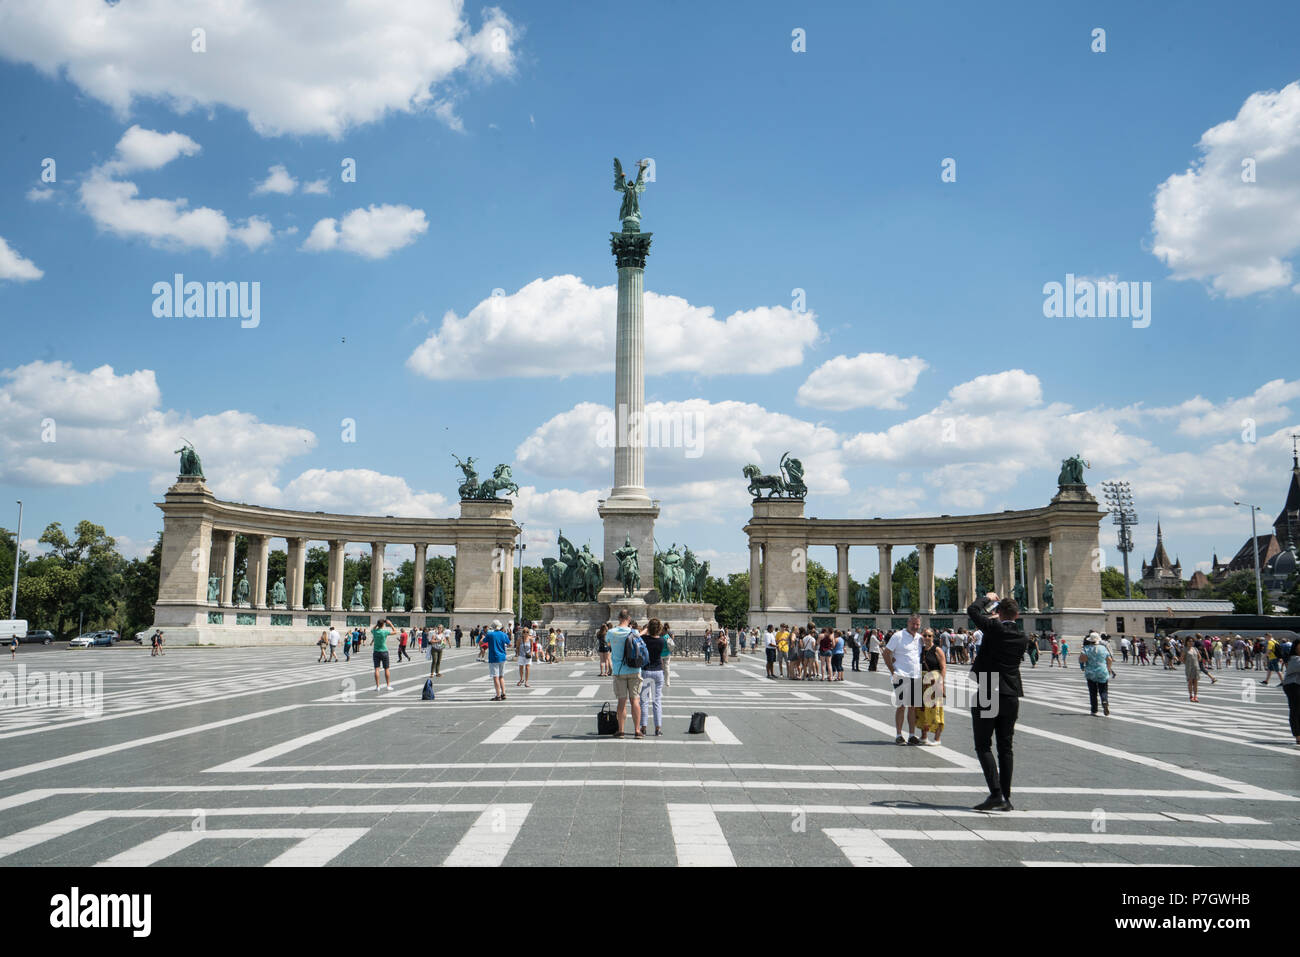 Das Denkmal des Tausendjährigen Reiches auf dem Heldenplatz in Budapest, Ungarn Stockfoto